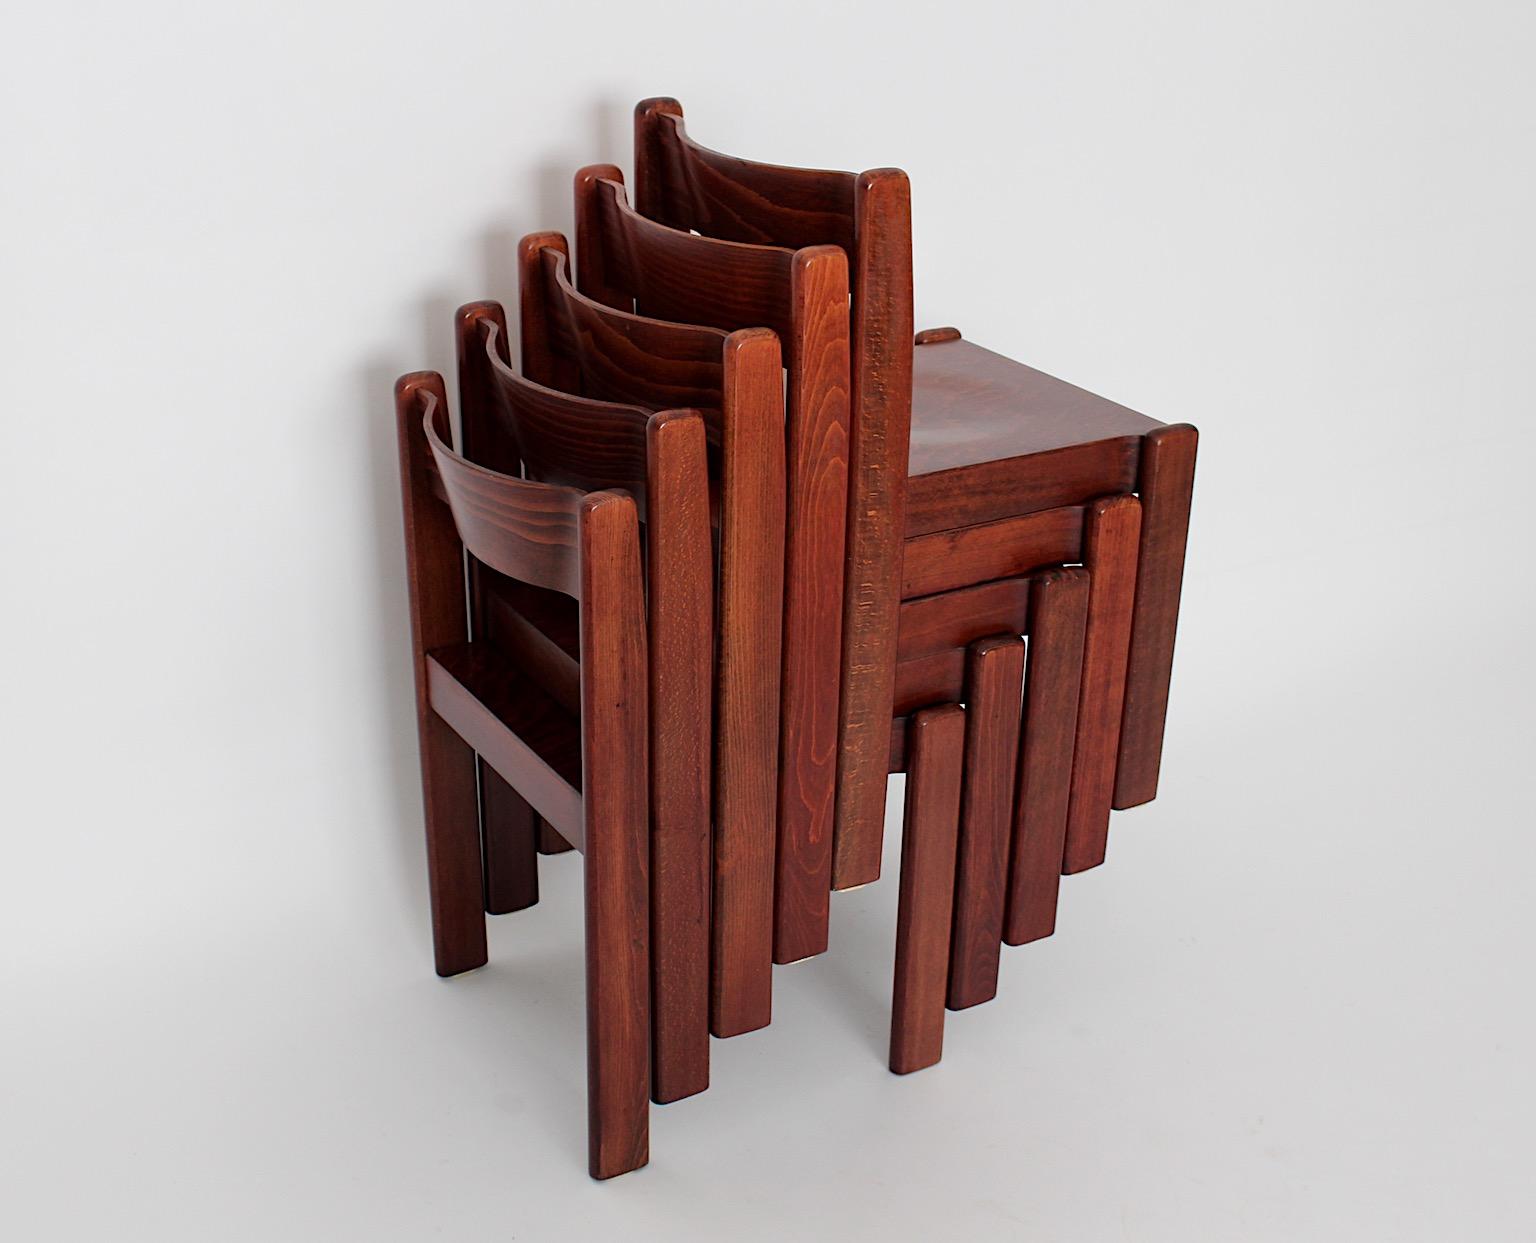 Modernist vintage Buche Esszimmerstühle oder Stühle braun gebeizt entworfen und hergestellt Italien 1970er, bis zu neunzehn ( 19 ) Stühle.
Ein toller Esszimmerstuhl mit einer braun gebeizten und natürlich lackierten Oberfläche.
Durch ihre wunderbare